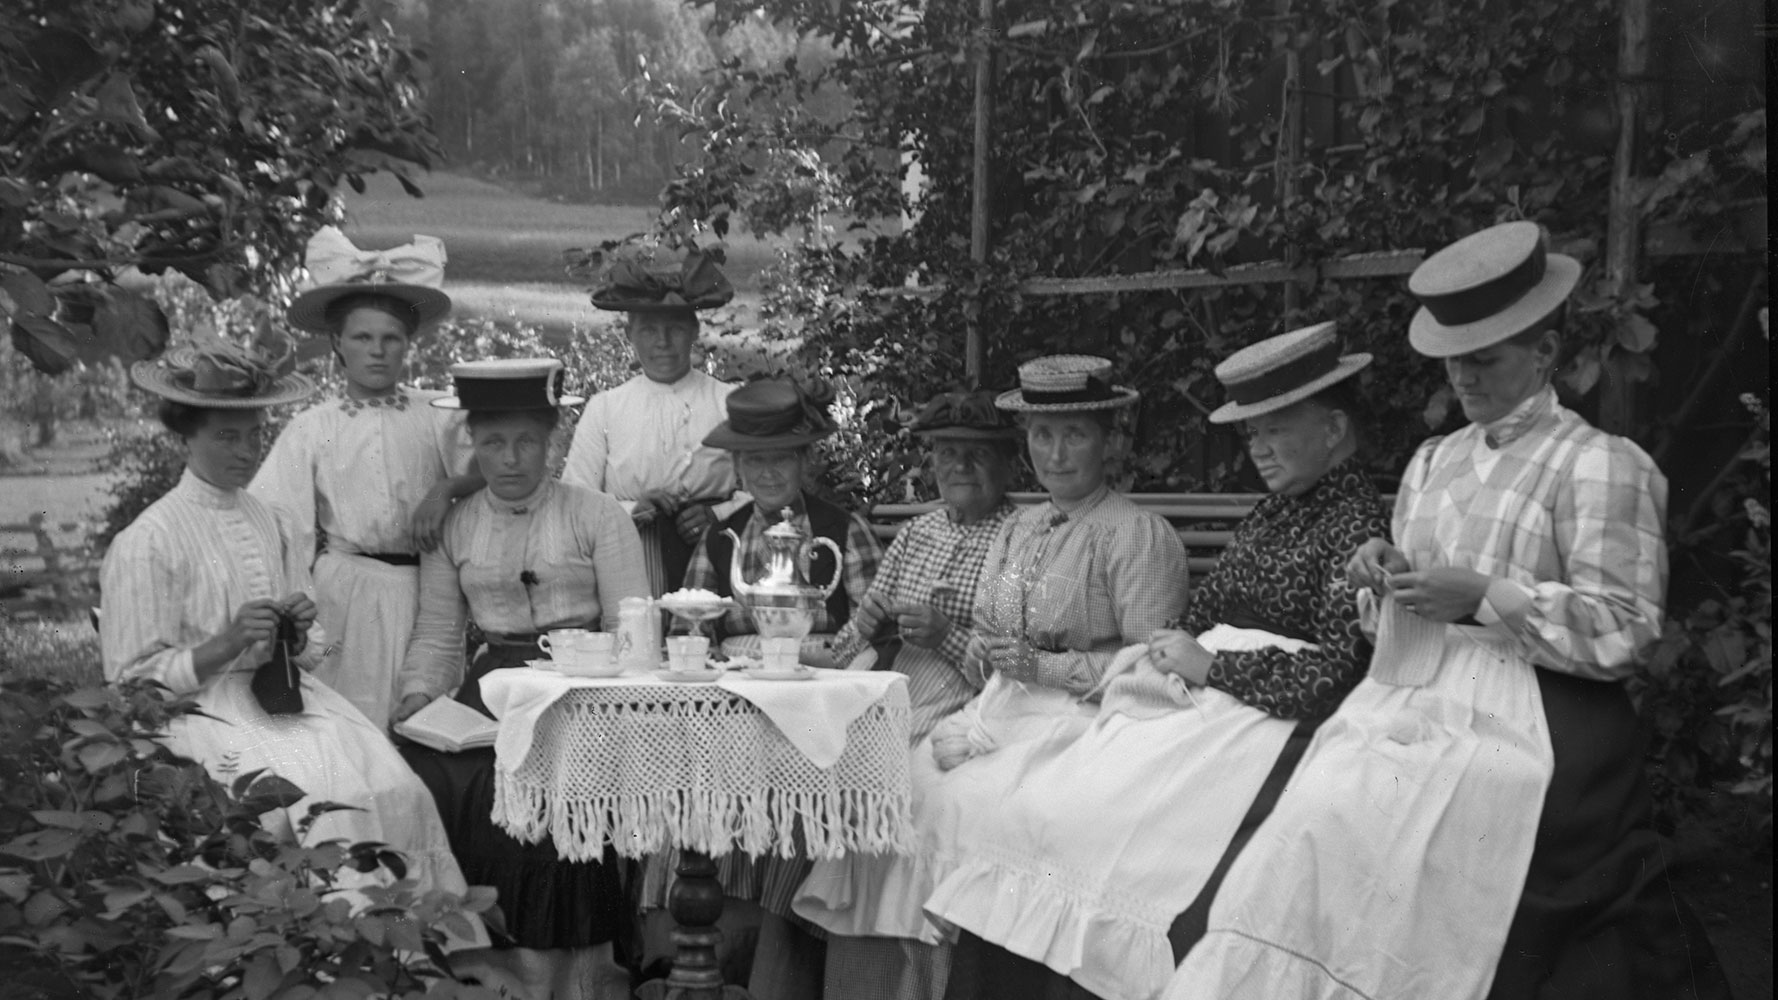 Svartvitt gammalt fotografi. En samling kvinnor i gammaldags klänningar och hattar poserar för porträtt ute i trädgården. De är samlade runt bord med vita spetsdukar och har handarbeten i sina händer.